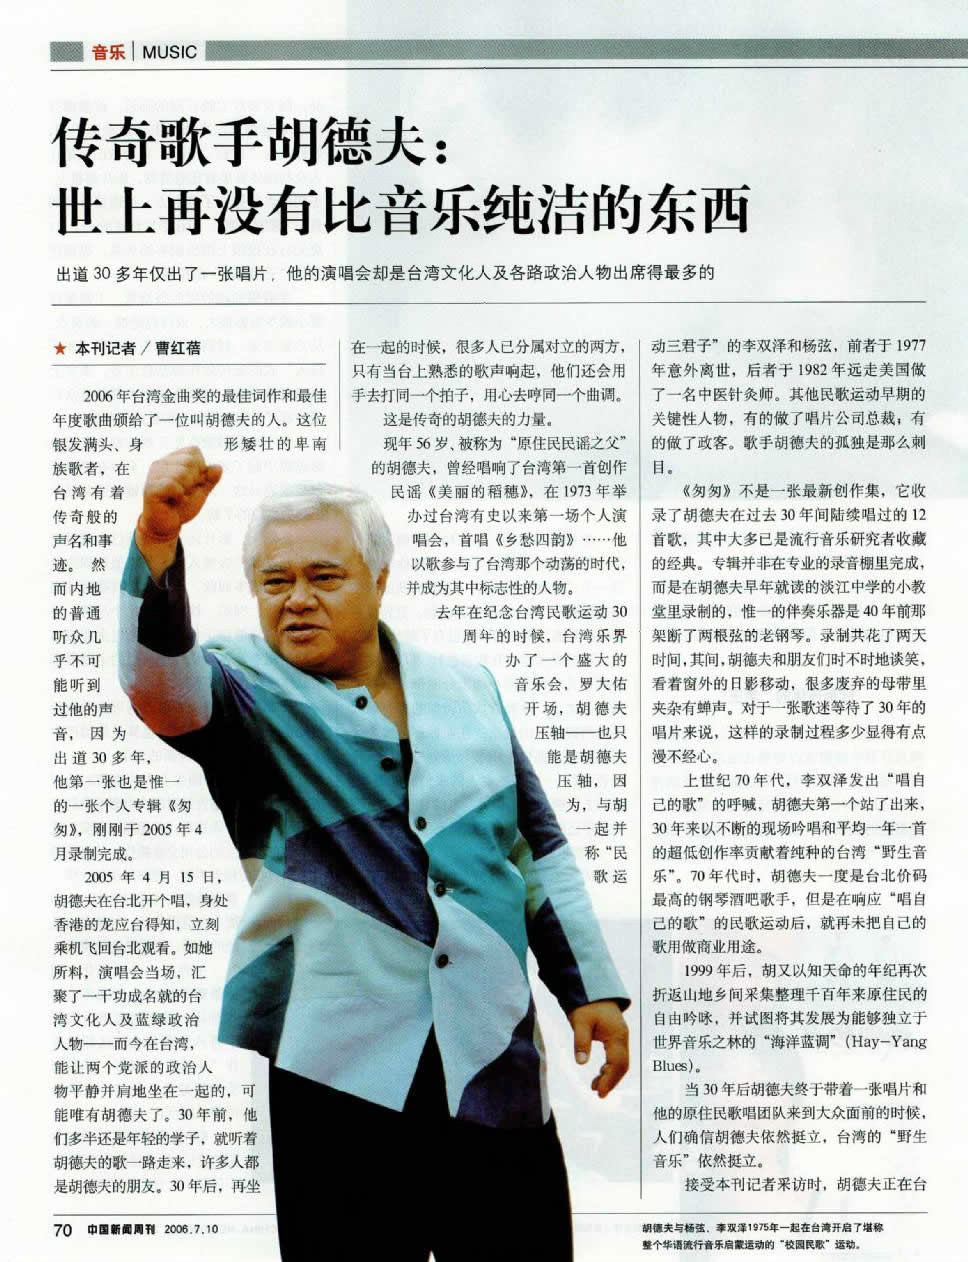 《中國新聞周刊》專訪胡德夫